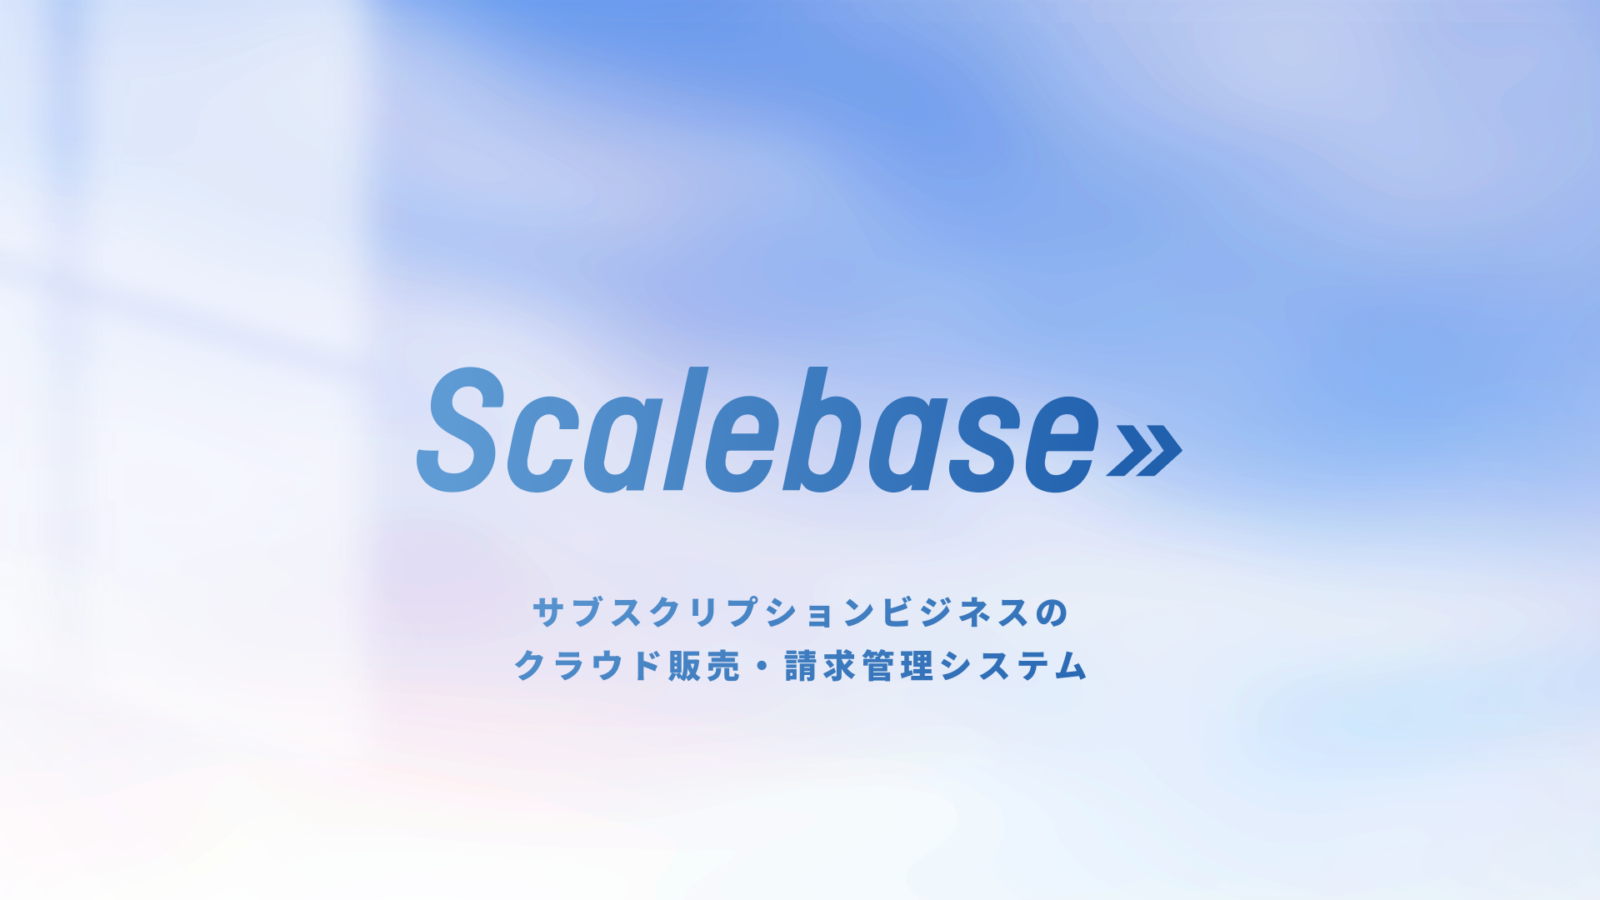 Scalebase サービス 製品資料